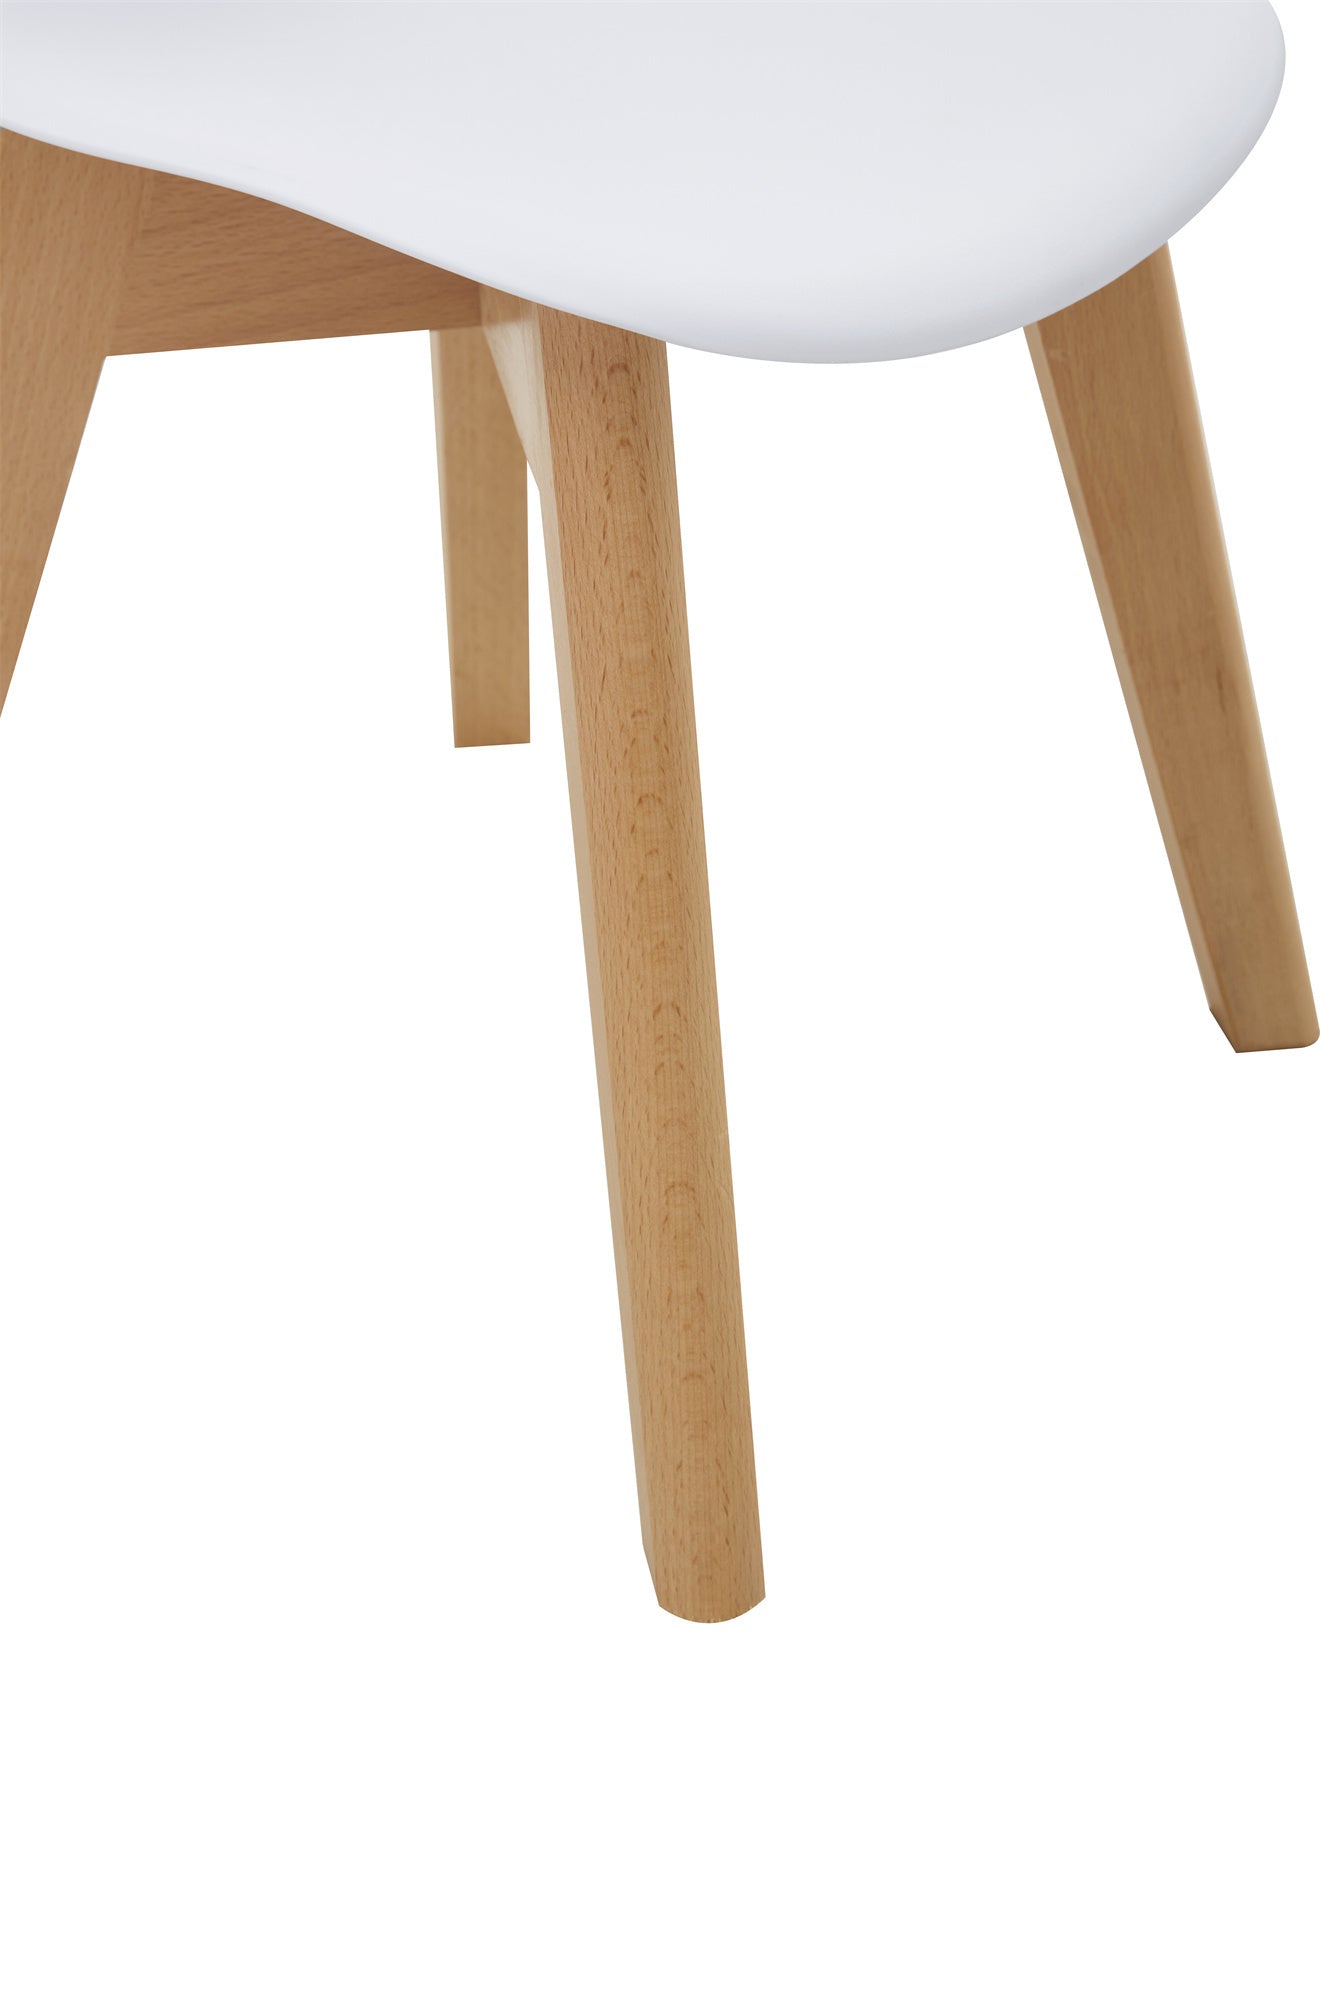 BB chair ,wood leg; Modern Kids Chair (Set of 2)  WHITE, 2 pcs per set